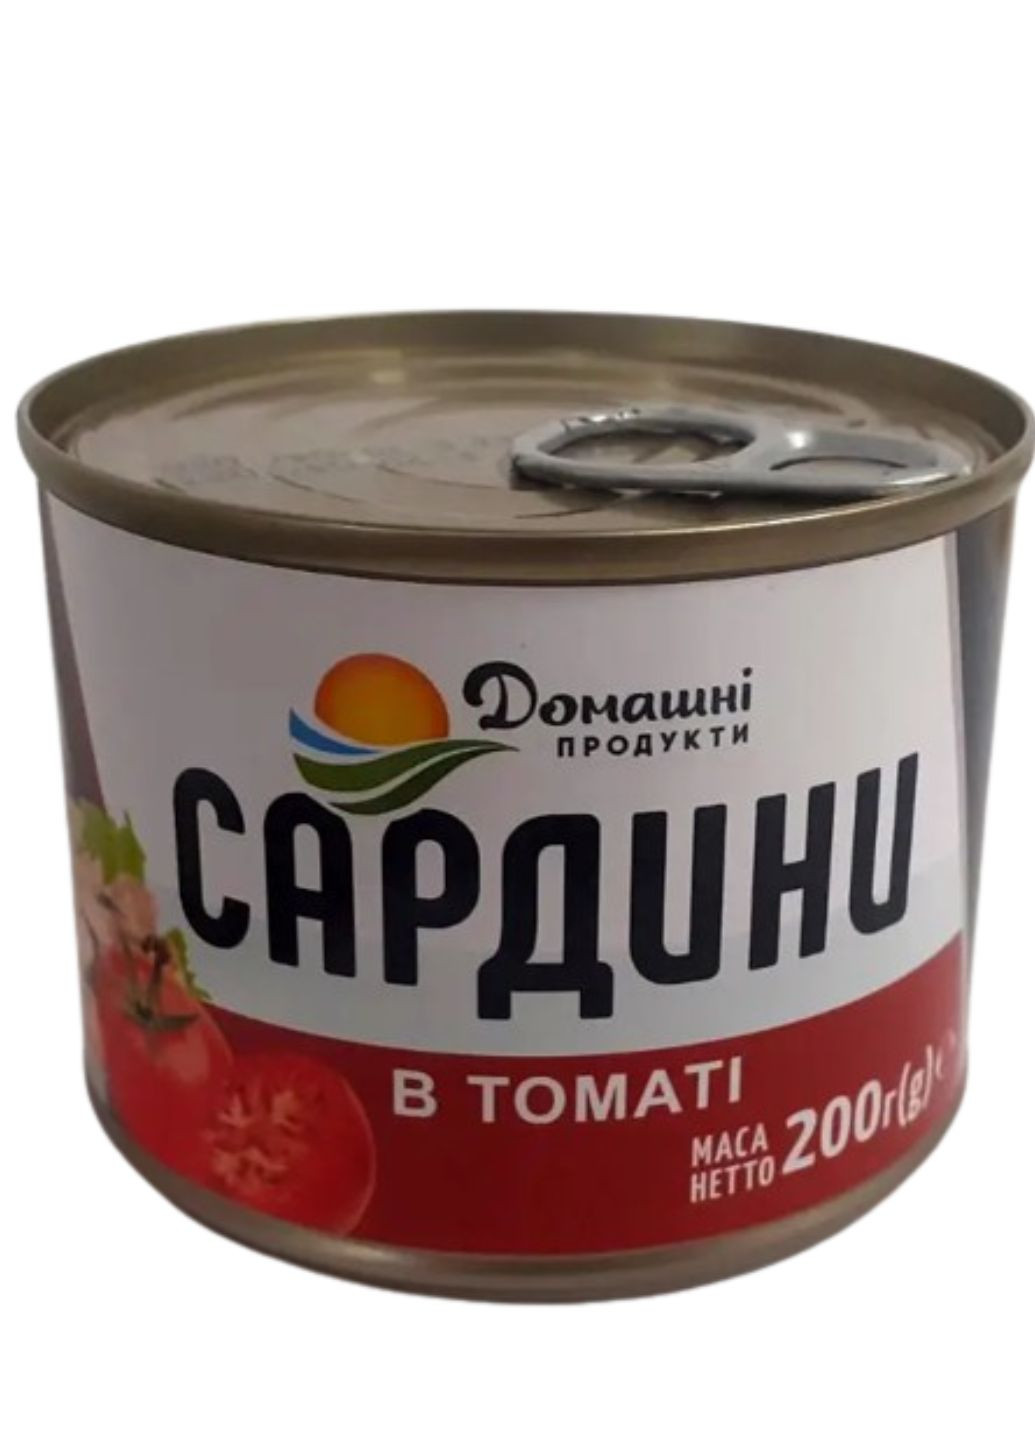 Сардина в томатном соусе Домашние продукты 200 г Домашні продукти (277978091)